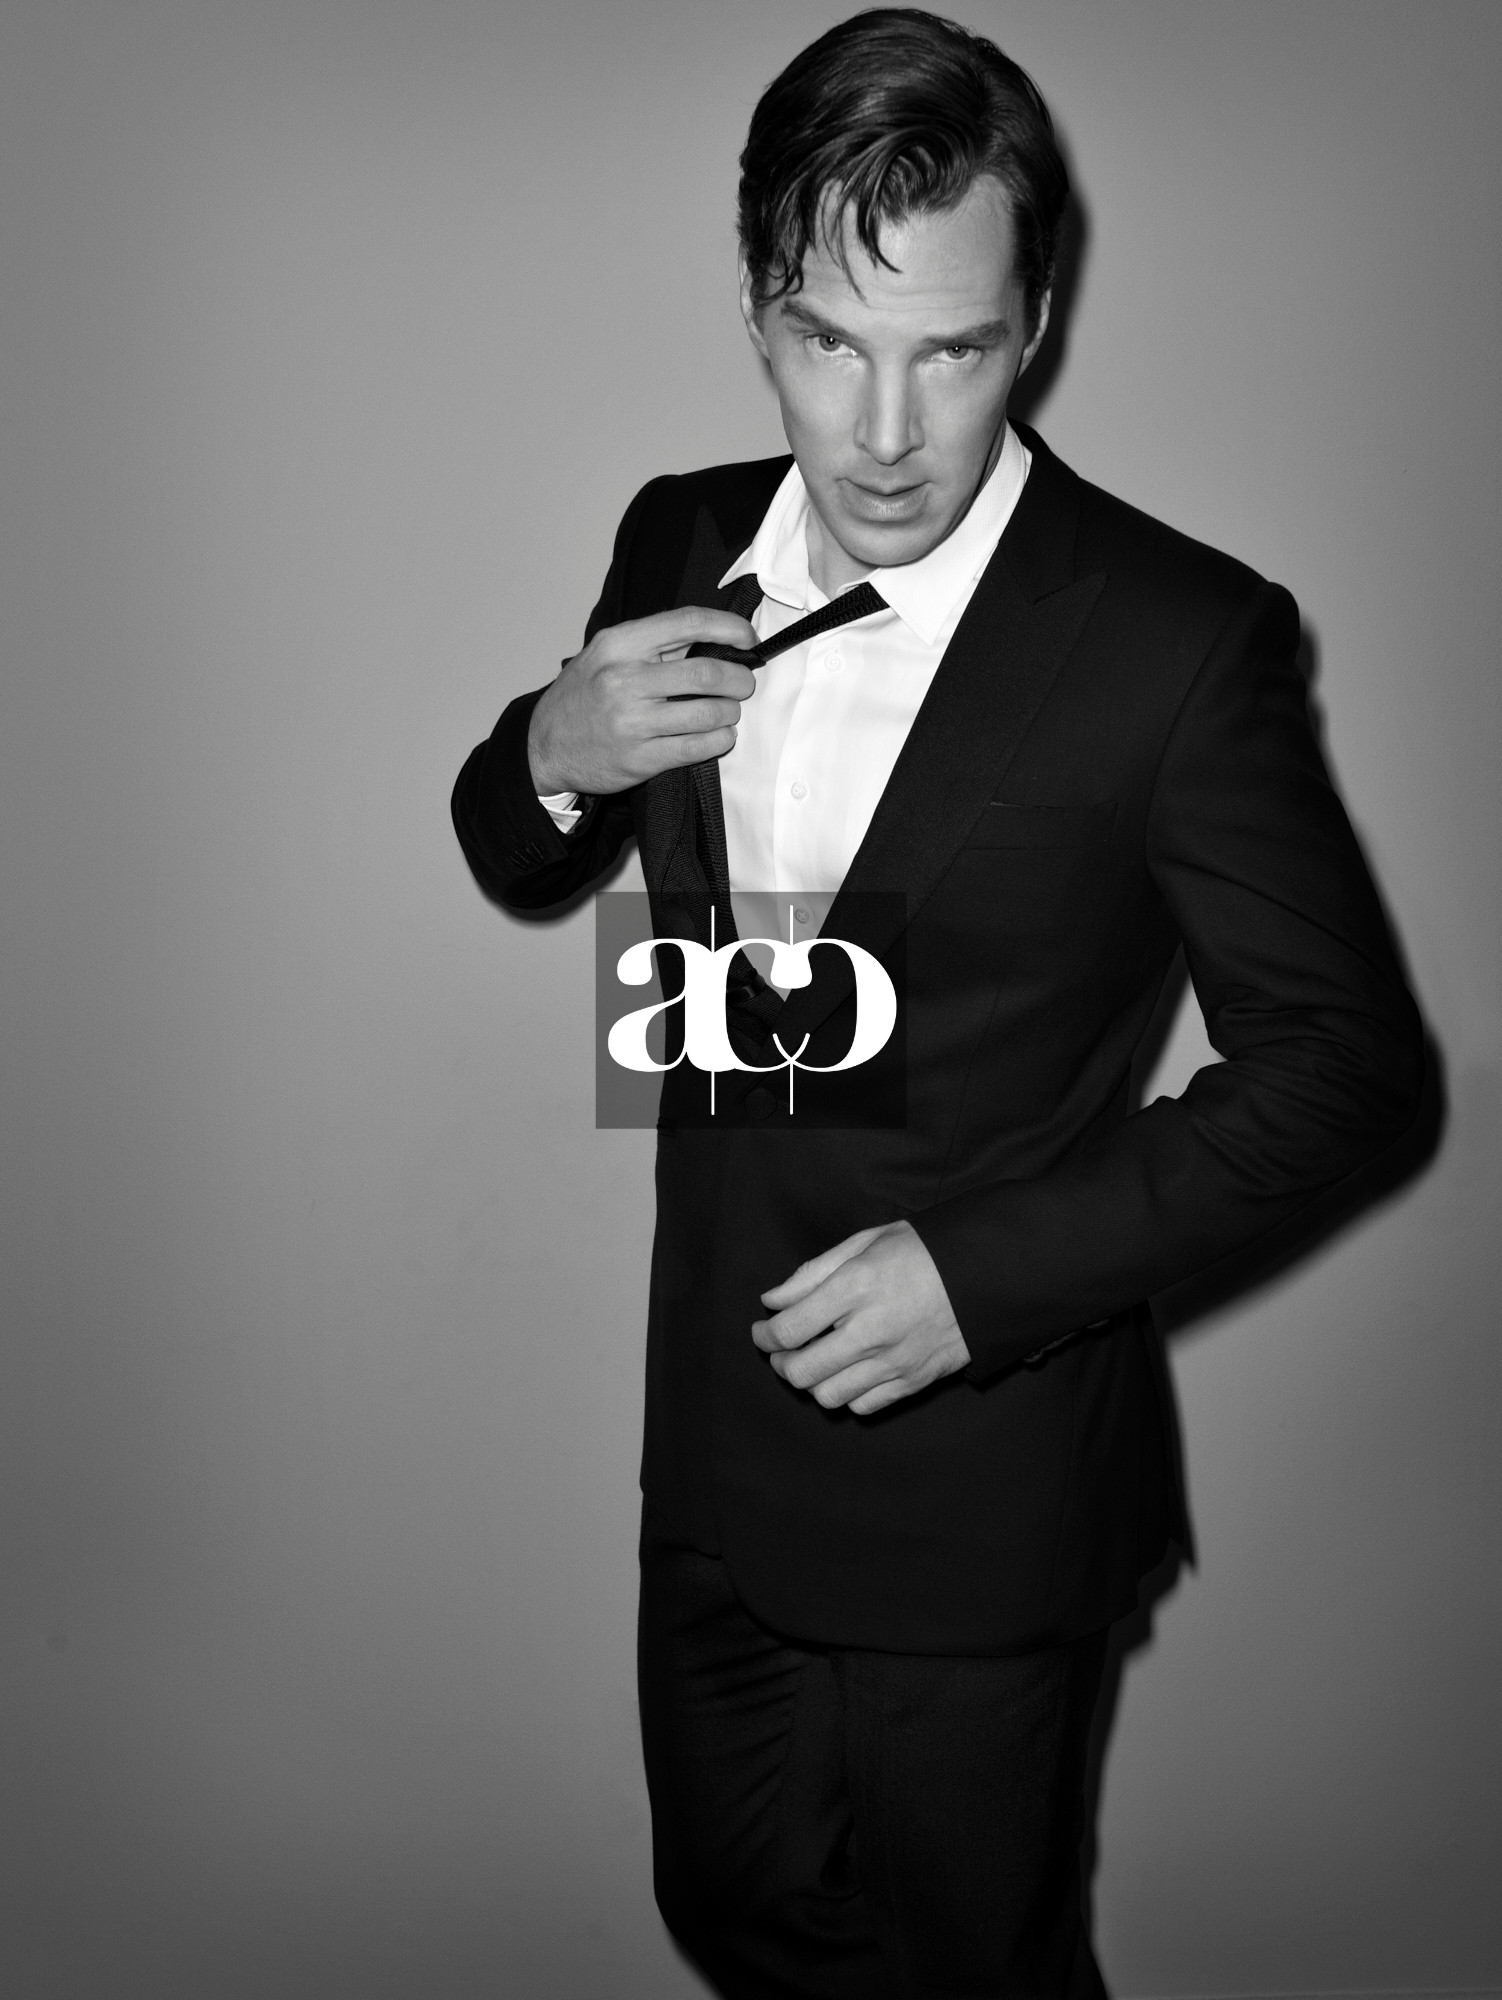 Adaptation: Benedict Cumberbatch